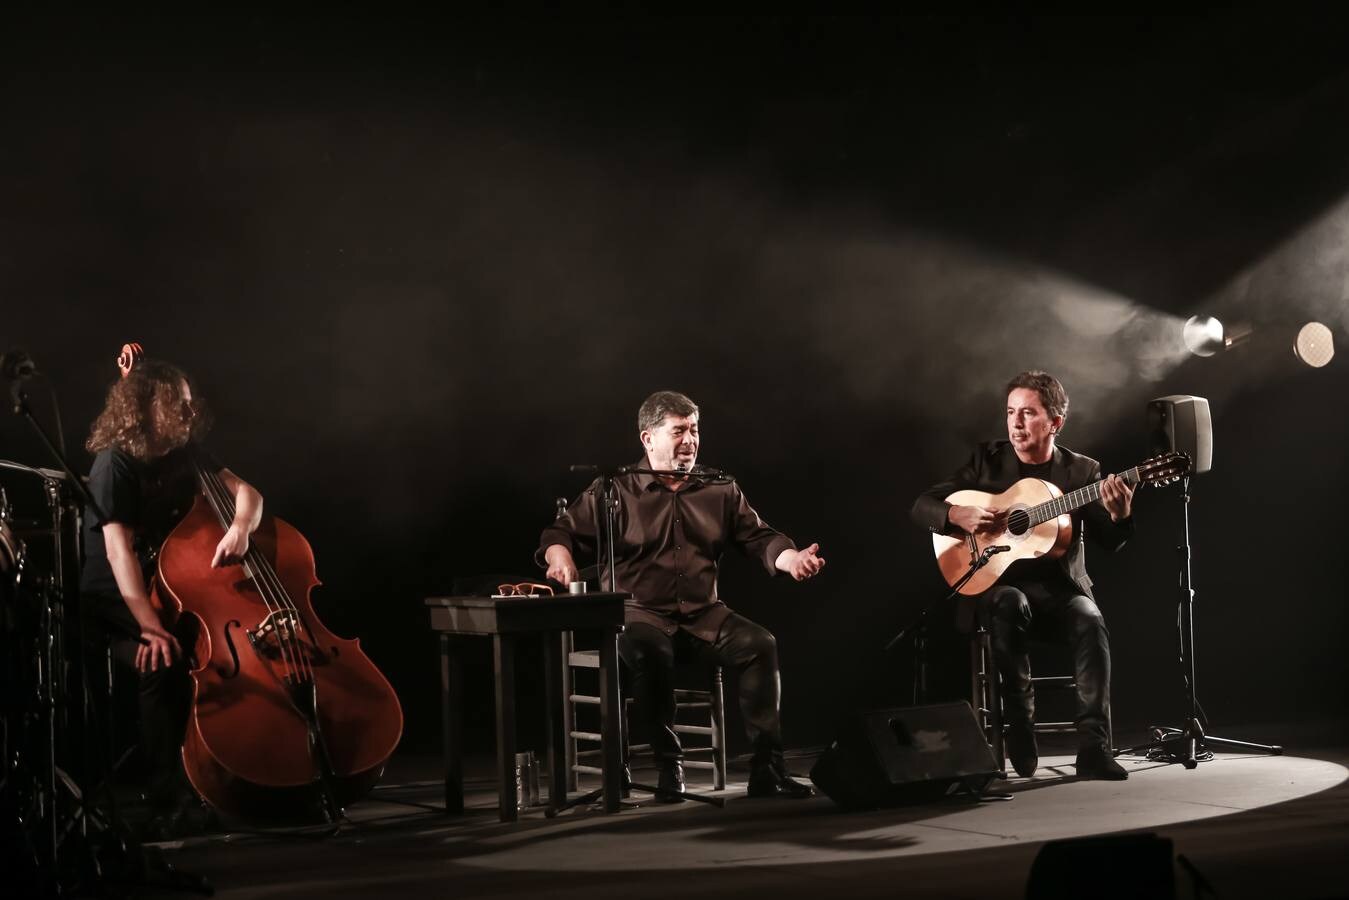 Bienal de Flamenco 2020: Tomás de Perrate, entre lo clásico y lo experimental